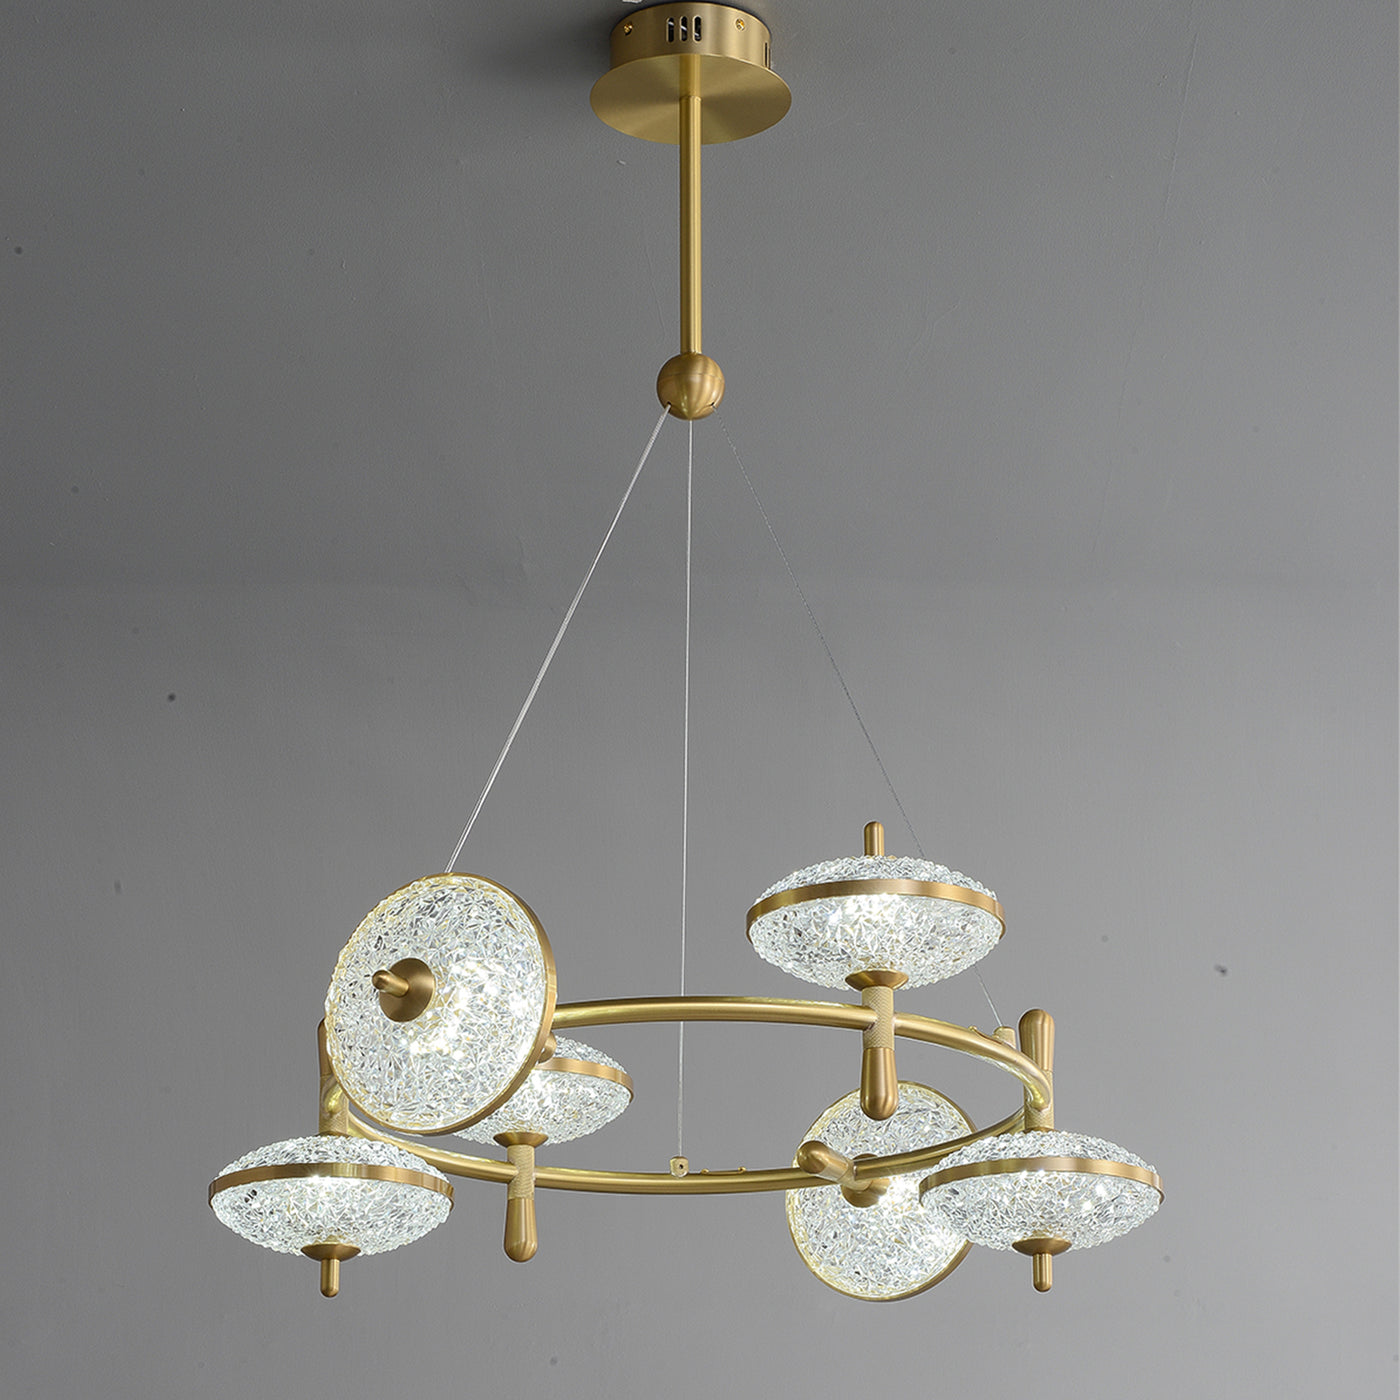 Creative brass disc chandelier